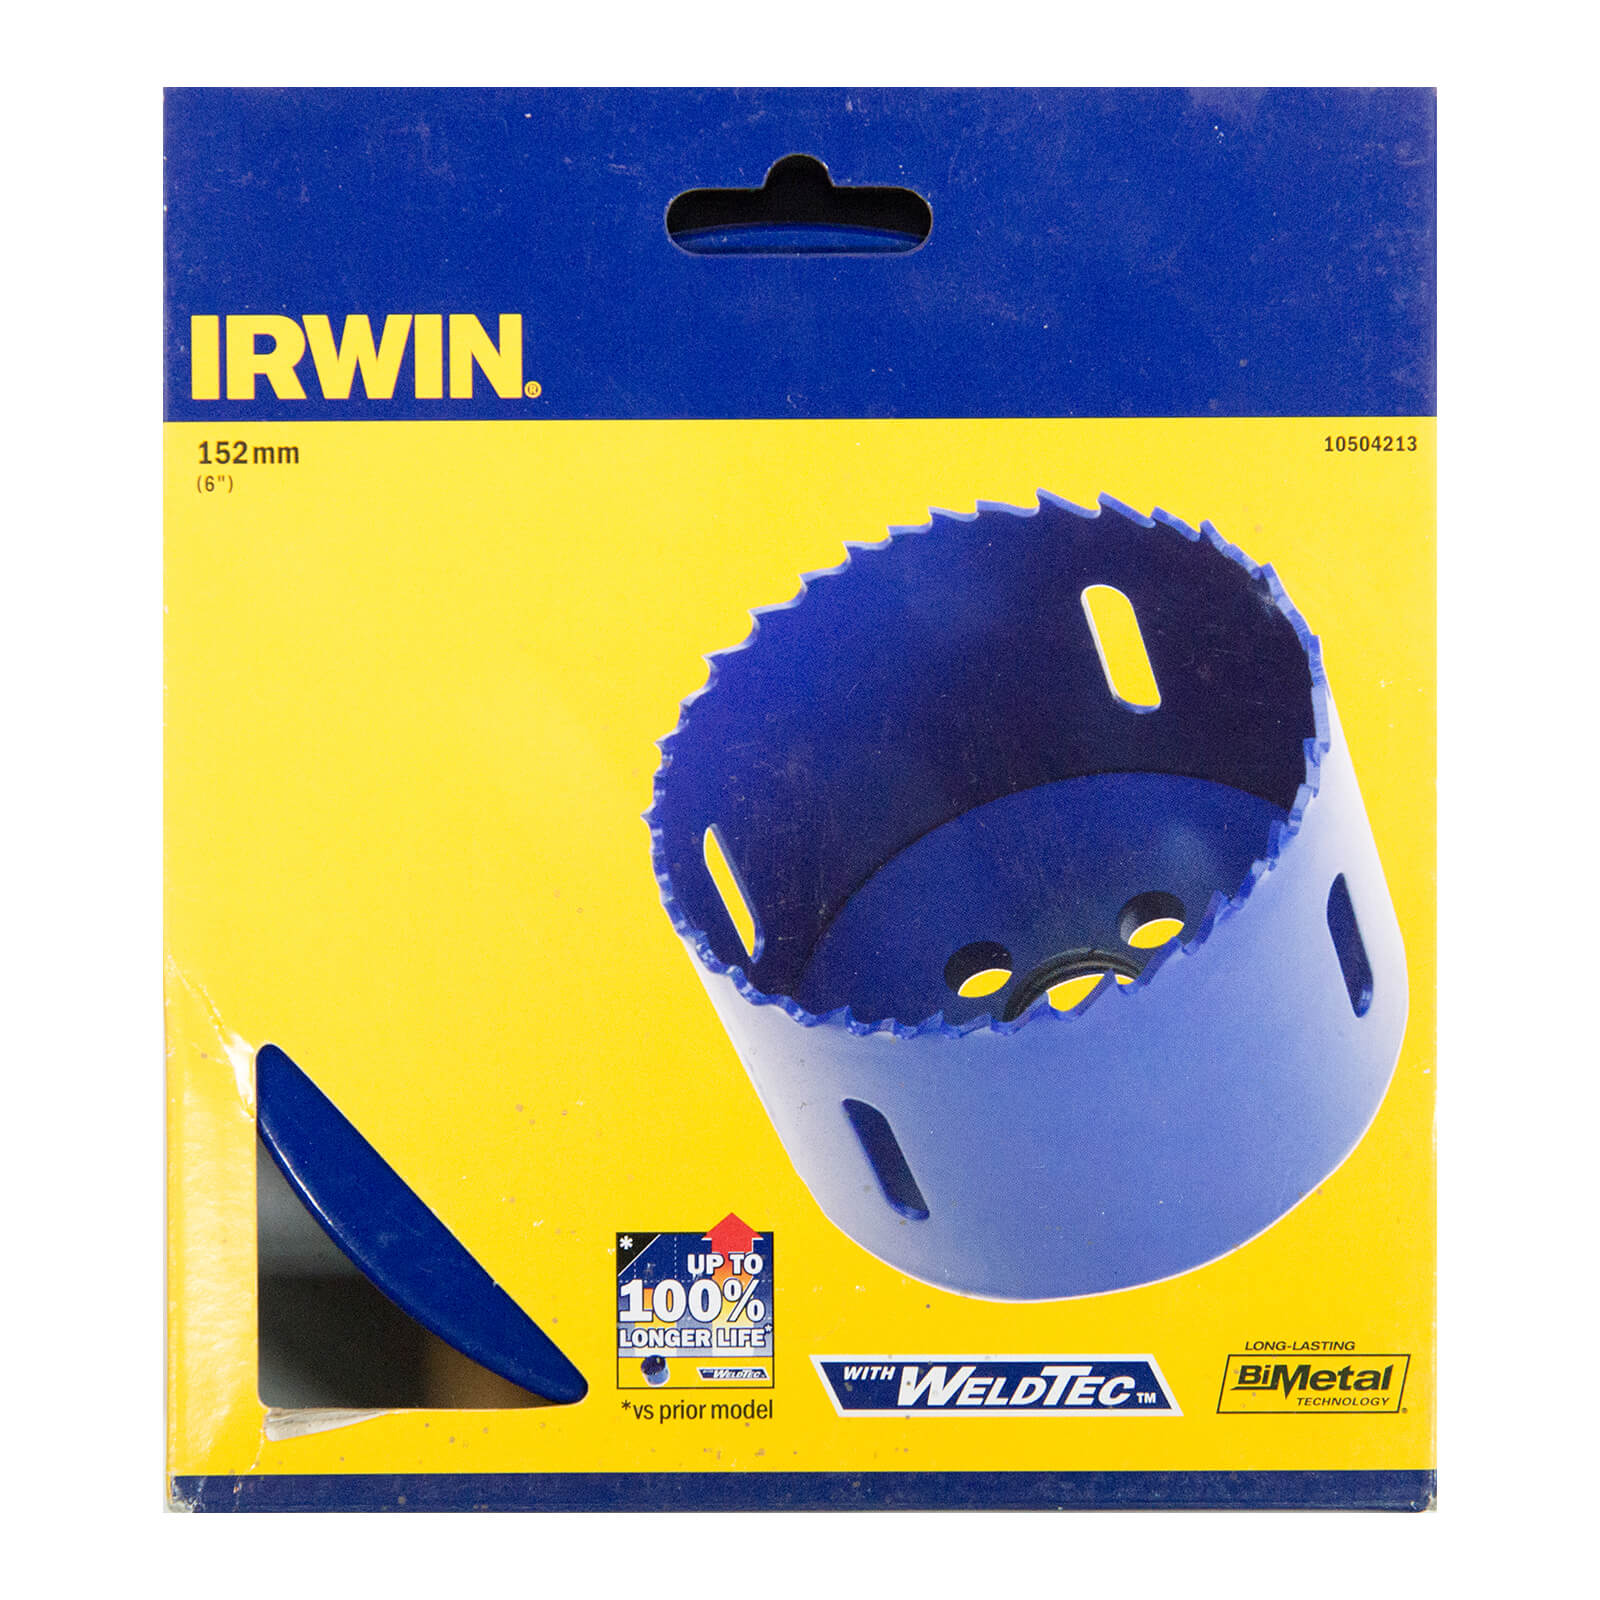 IRWIN Bi-Metal Hole Saw - 152mm